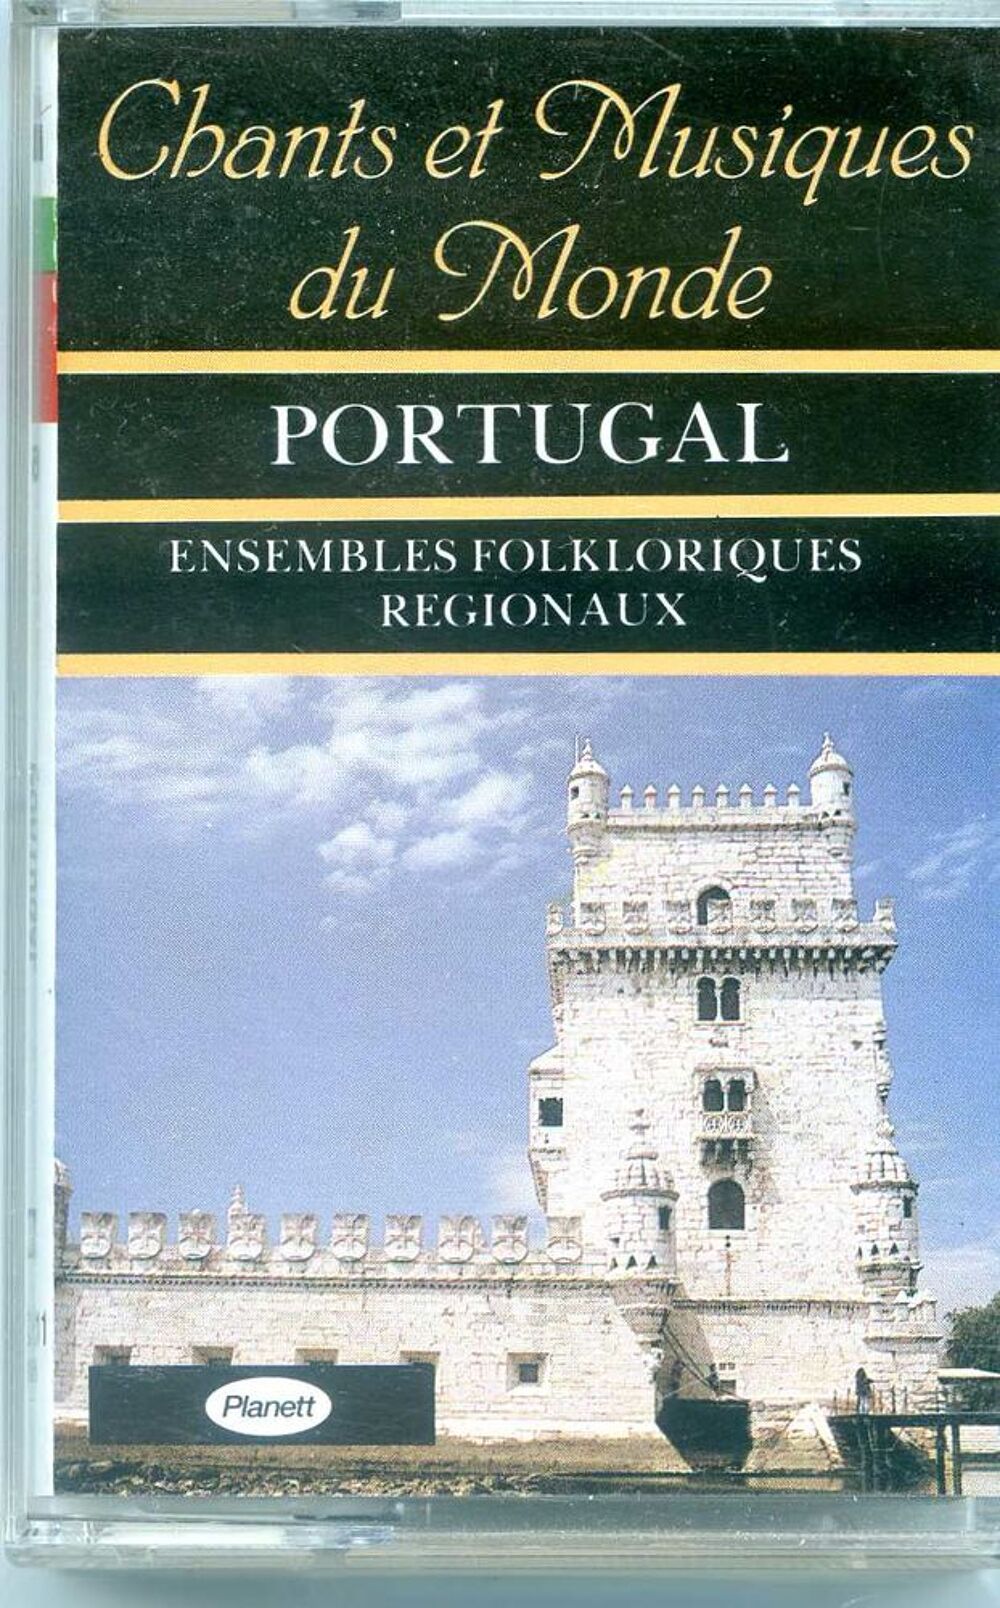 Portugal - ensembles folkloriques r&eacute;gionaux, CD et vinyles